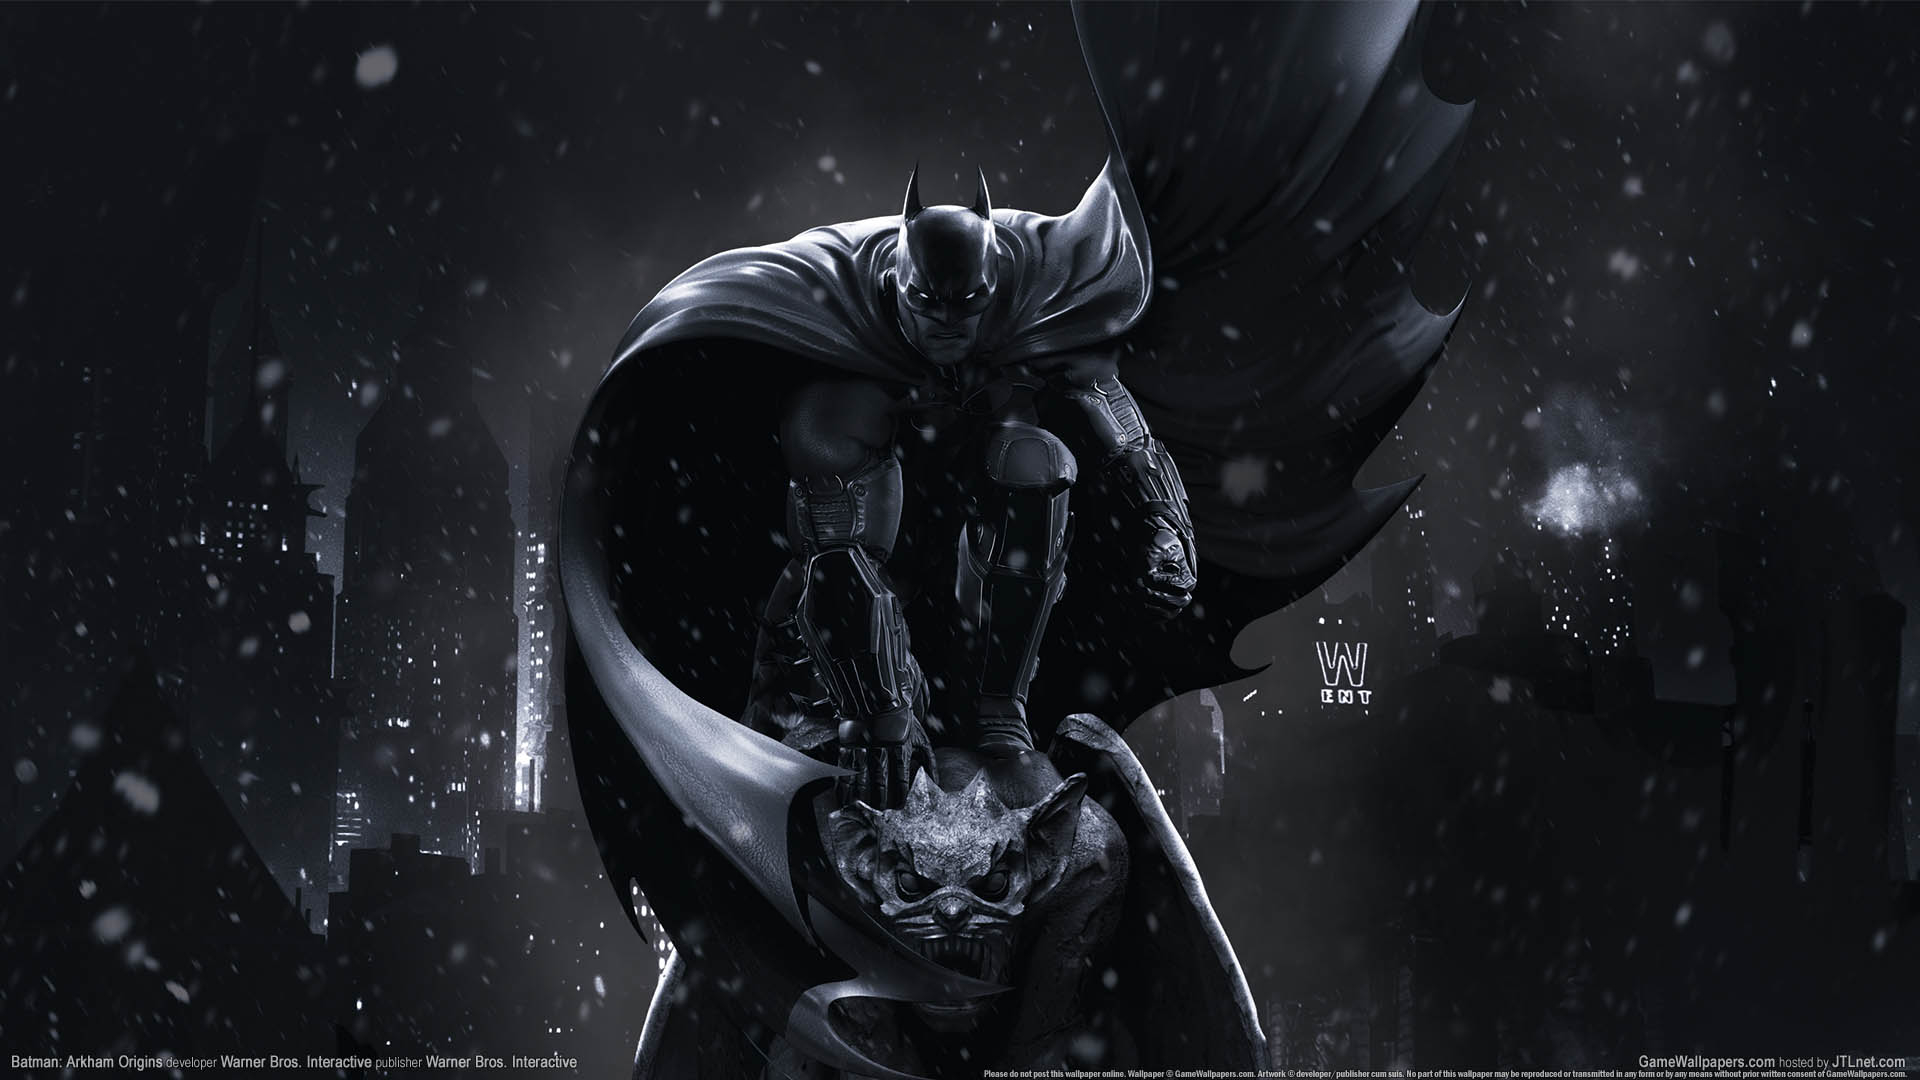 Batman: Arkham Origins fond d'cran 03 1920x1080